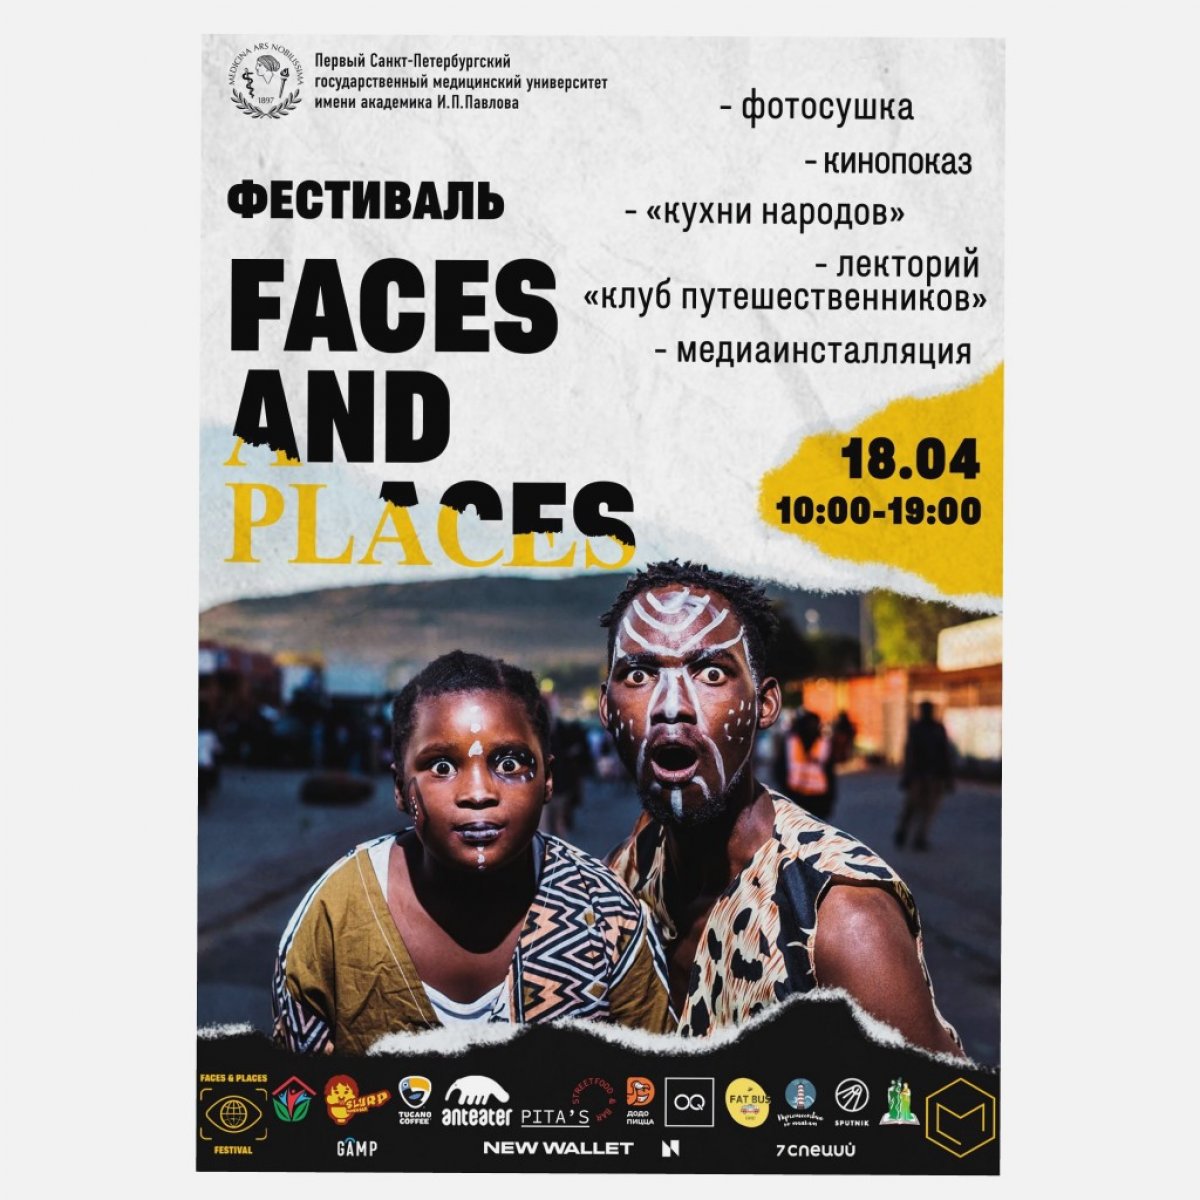 18 апреля на территории Первого медицинского пройдет фестиваль FACES & PLACES.